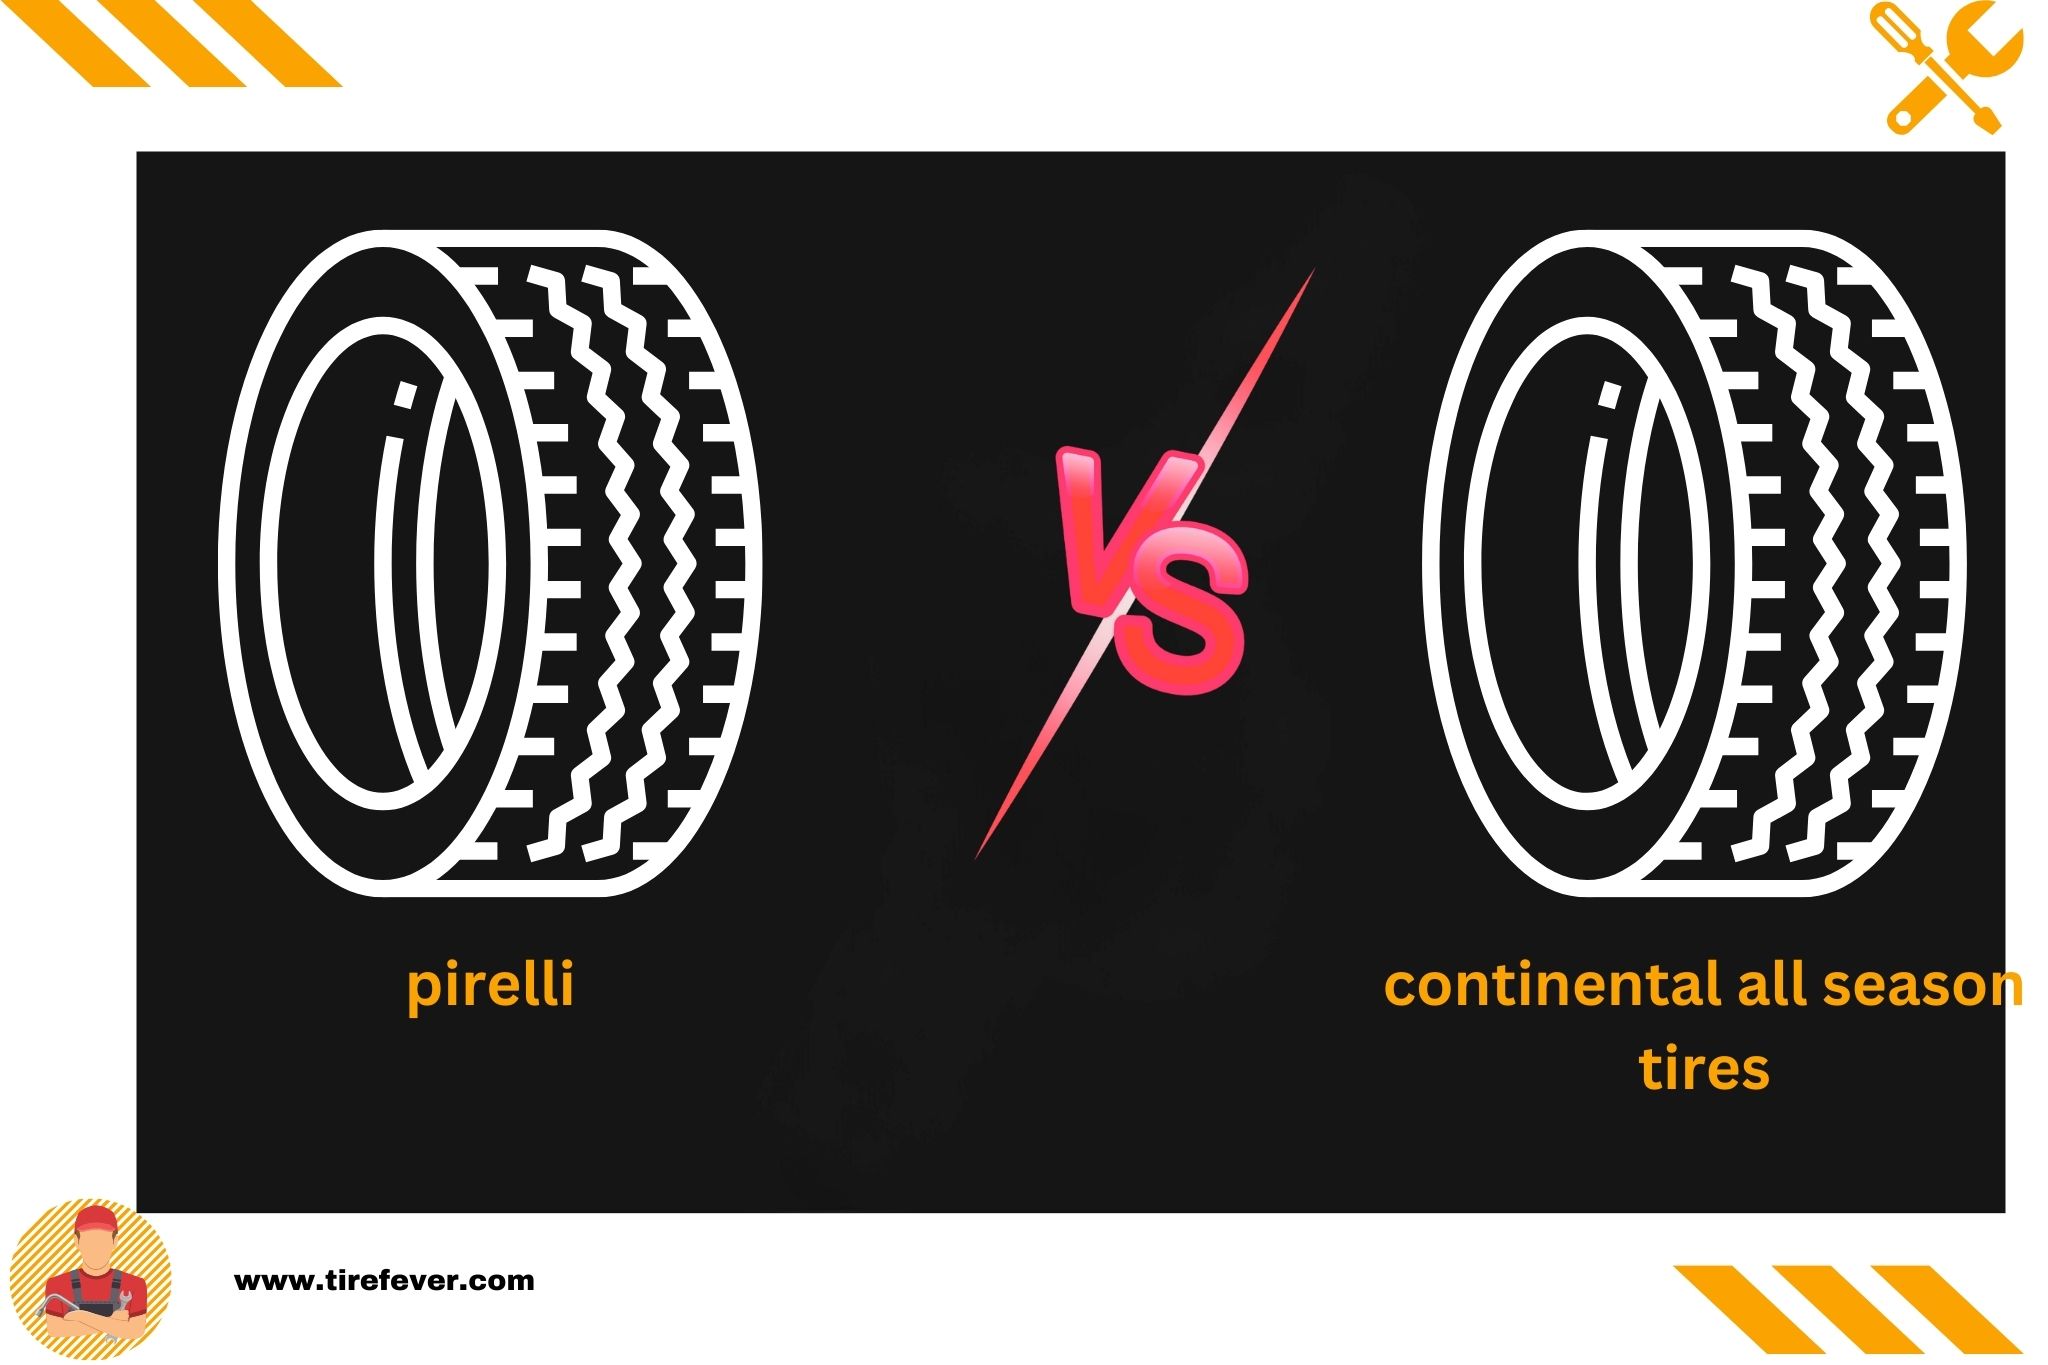 pirelli vs continental all season tires